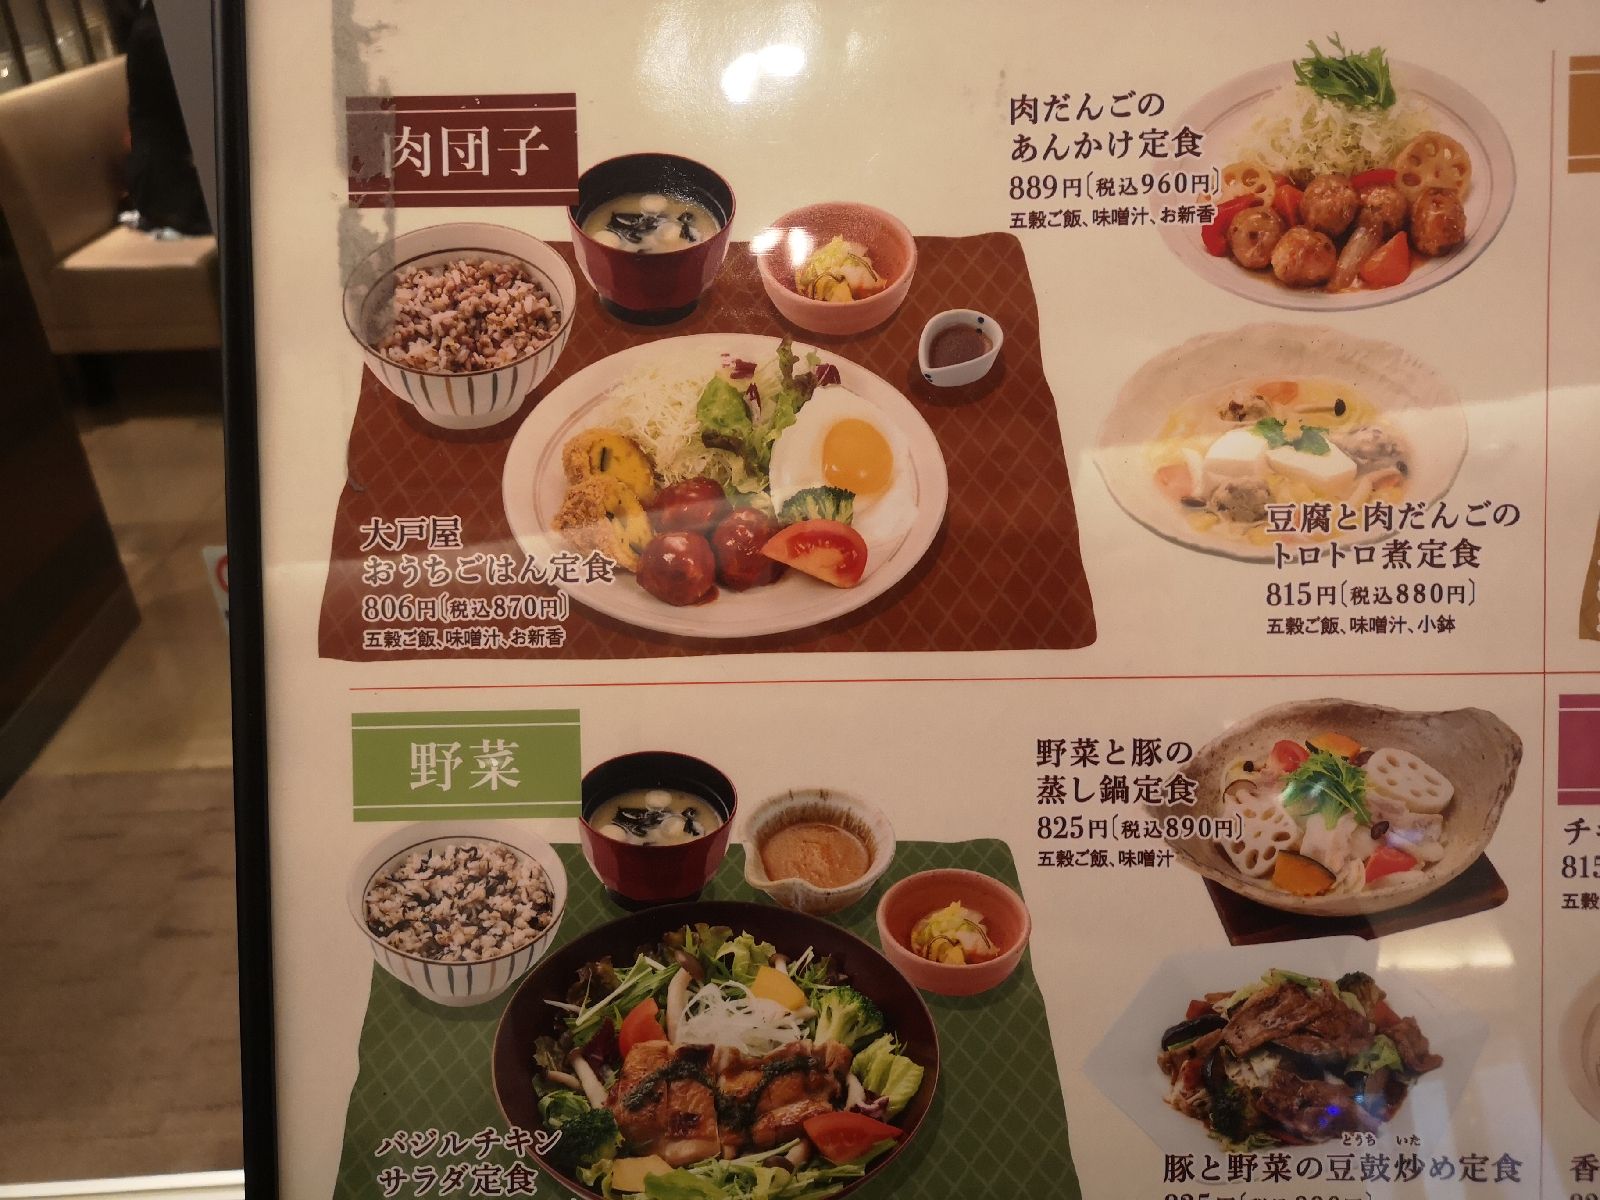 22最新 穴場 隠れ家はここ 札幌の人気レストラン その他 ランキングtop30 Retrip リトリップ